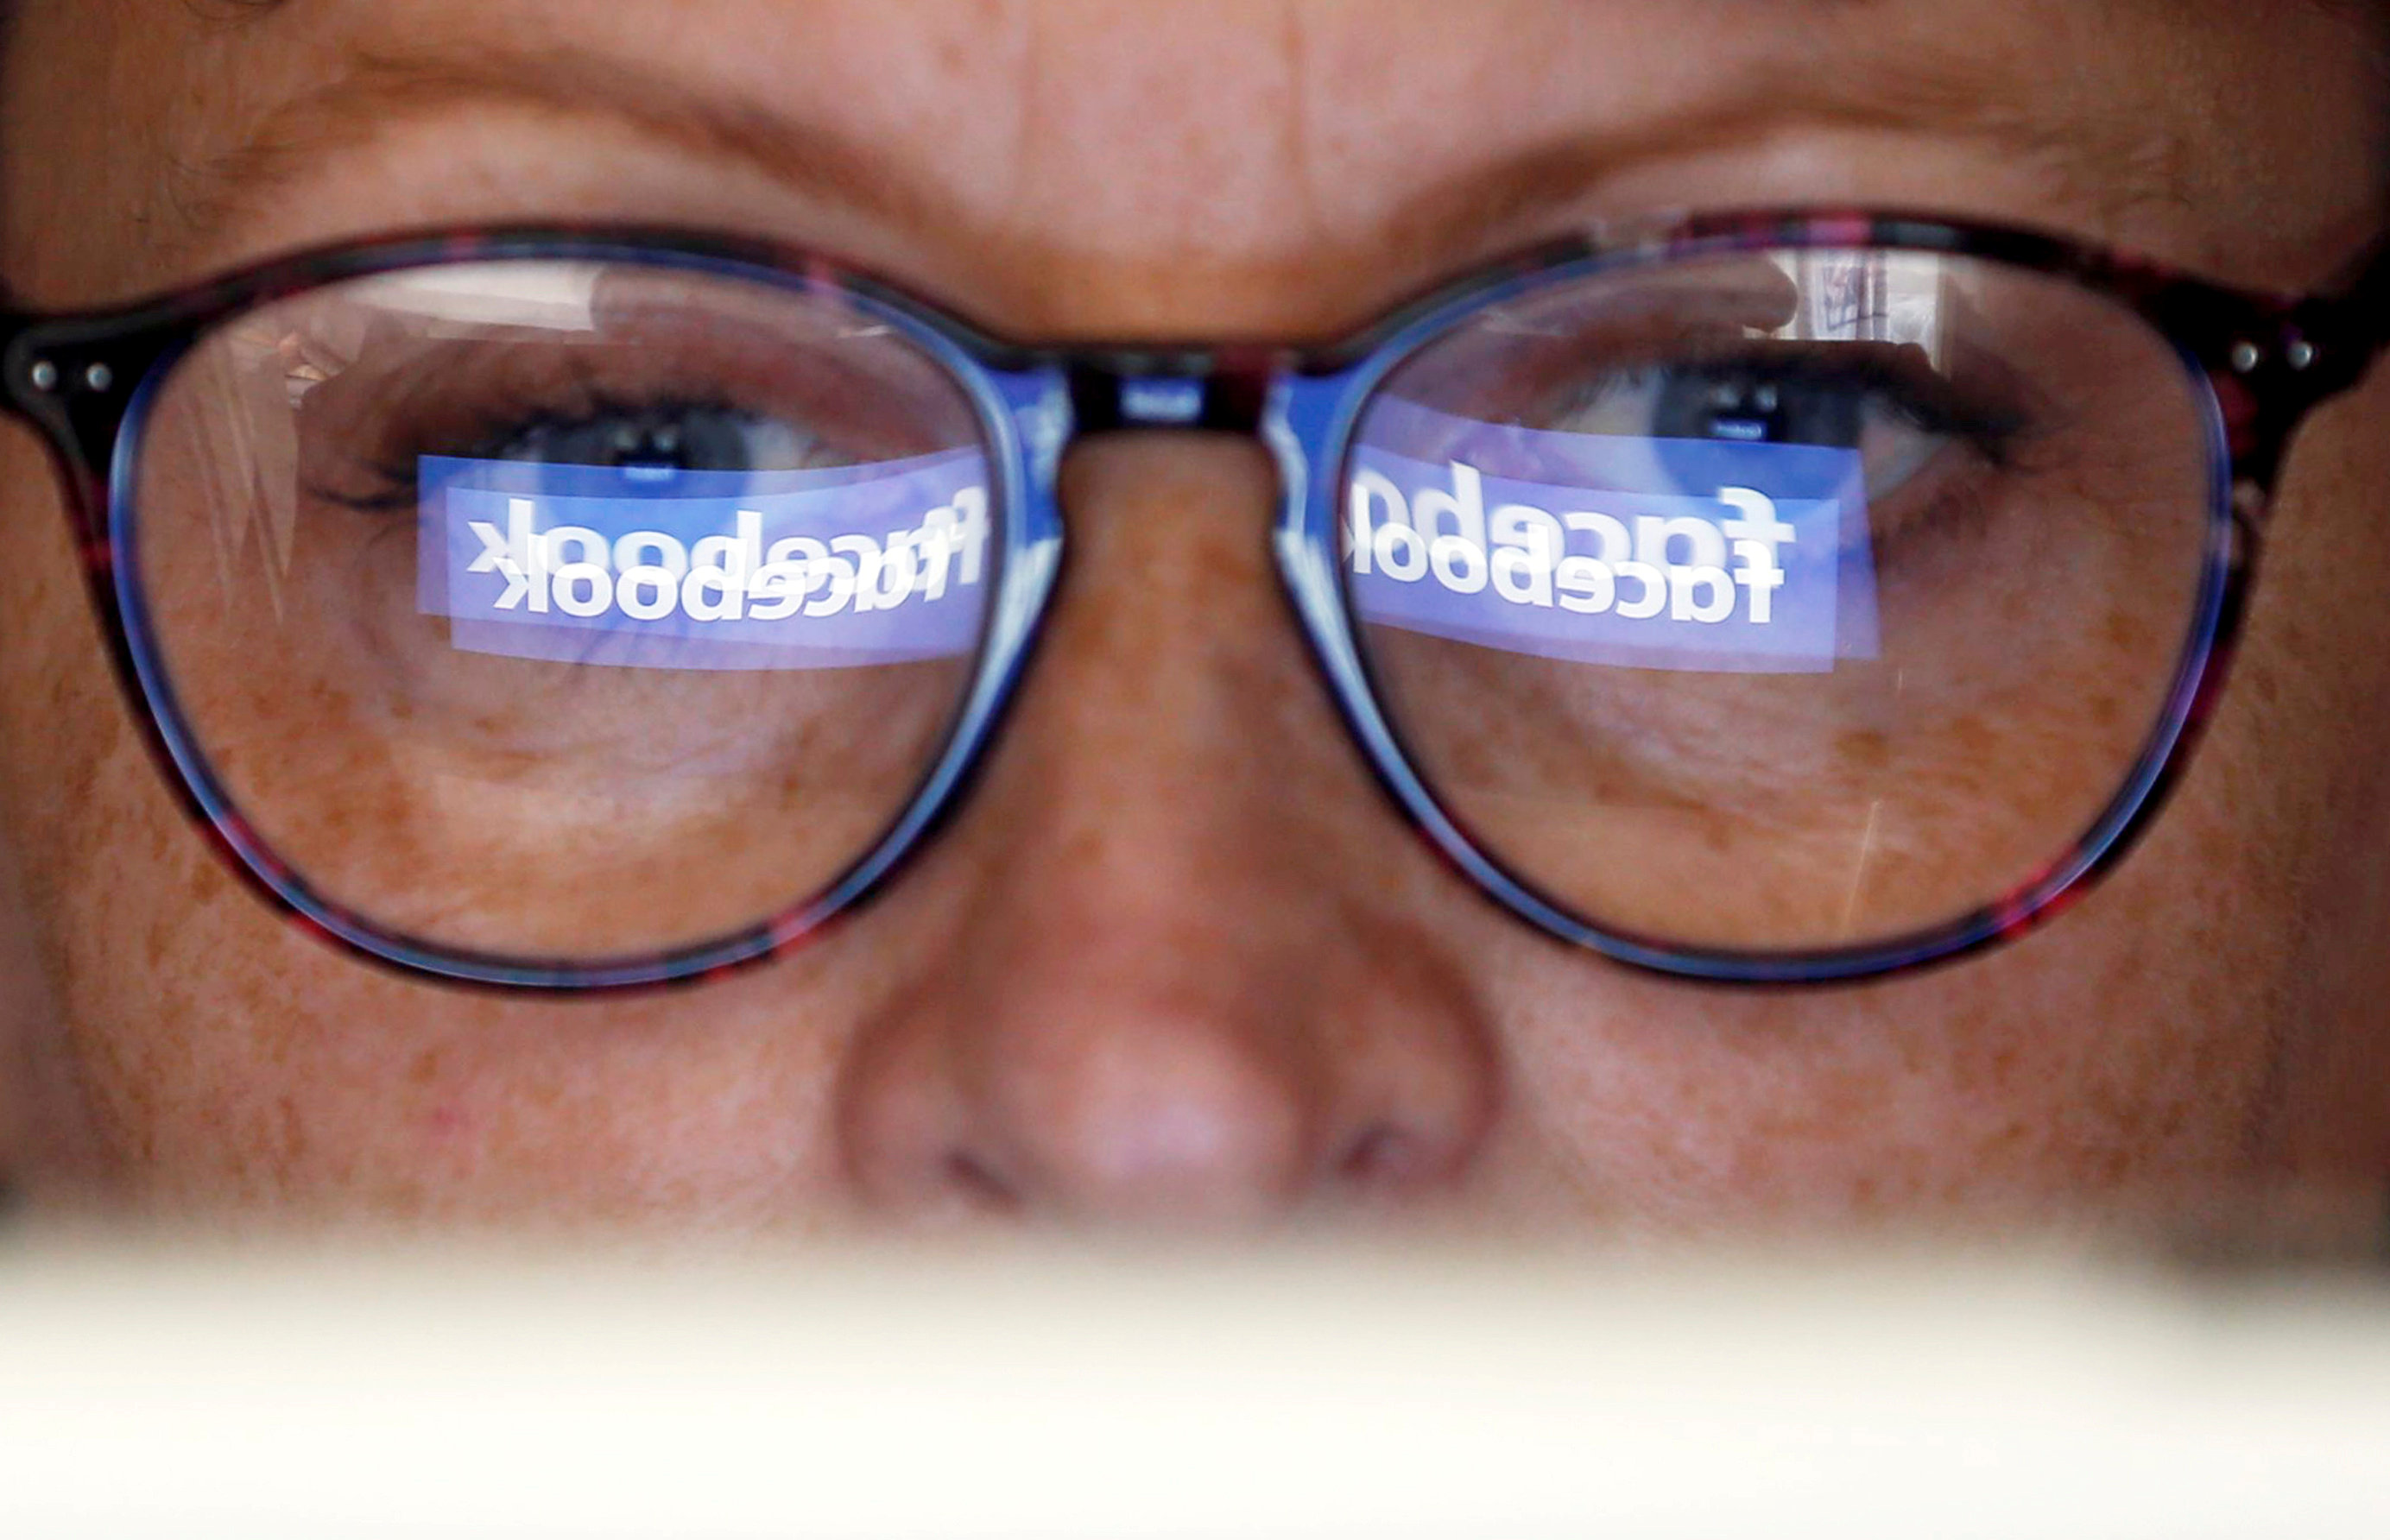 Facebook afirma que hackers accedieron a datos de 29 millones de sus usuarios